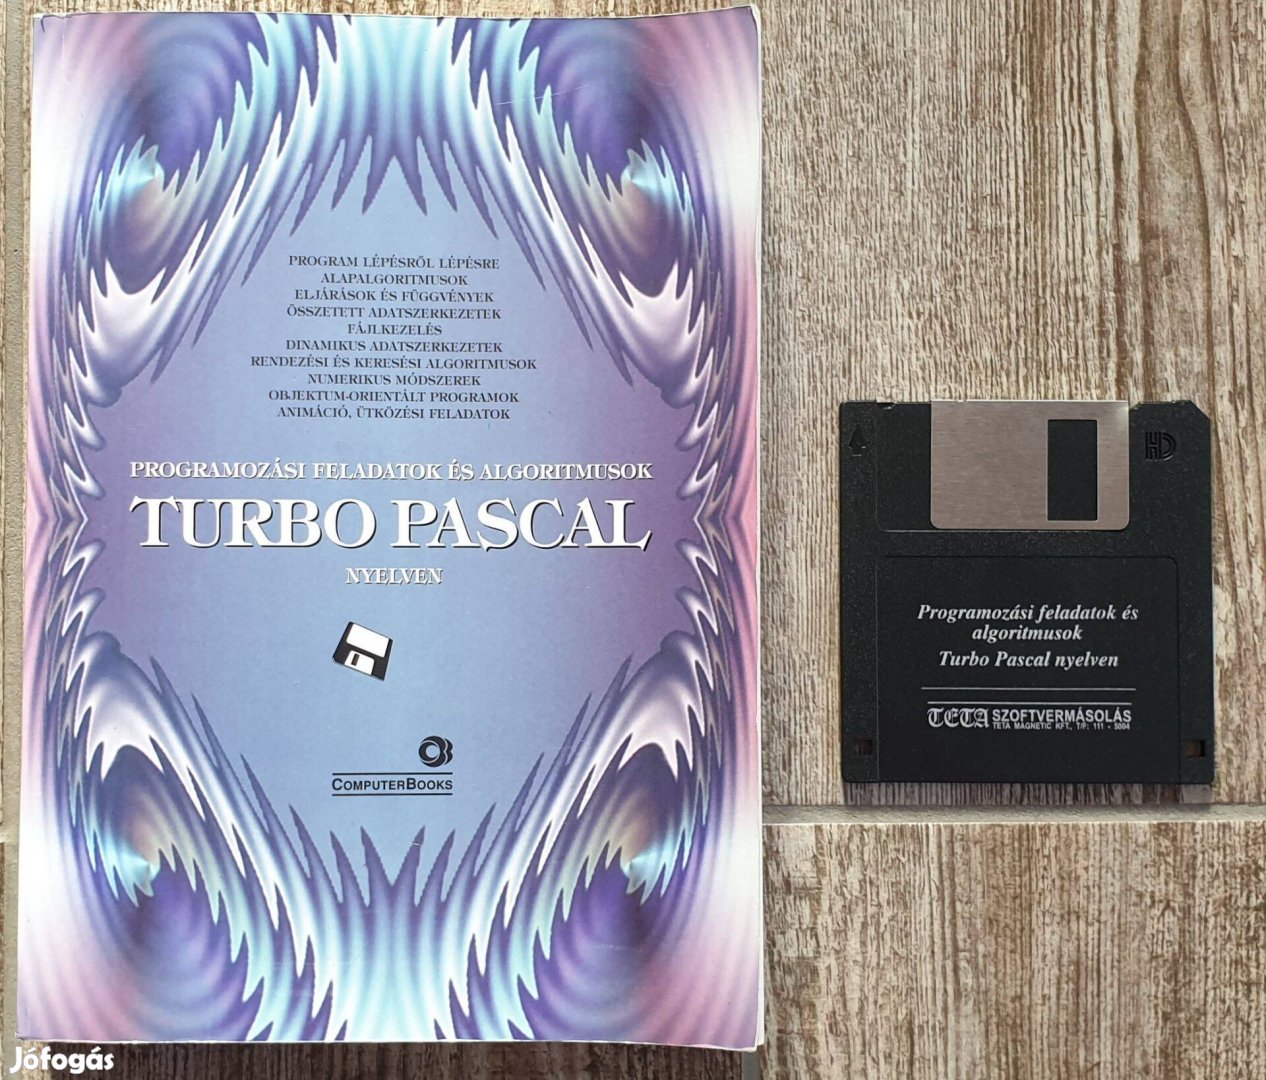 Turbo Pascal könyv 3.5'' floppy lemezzel